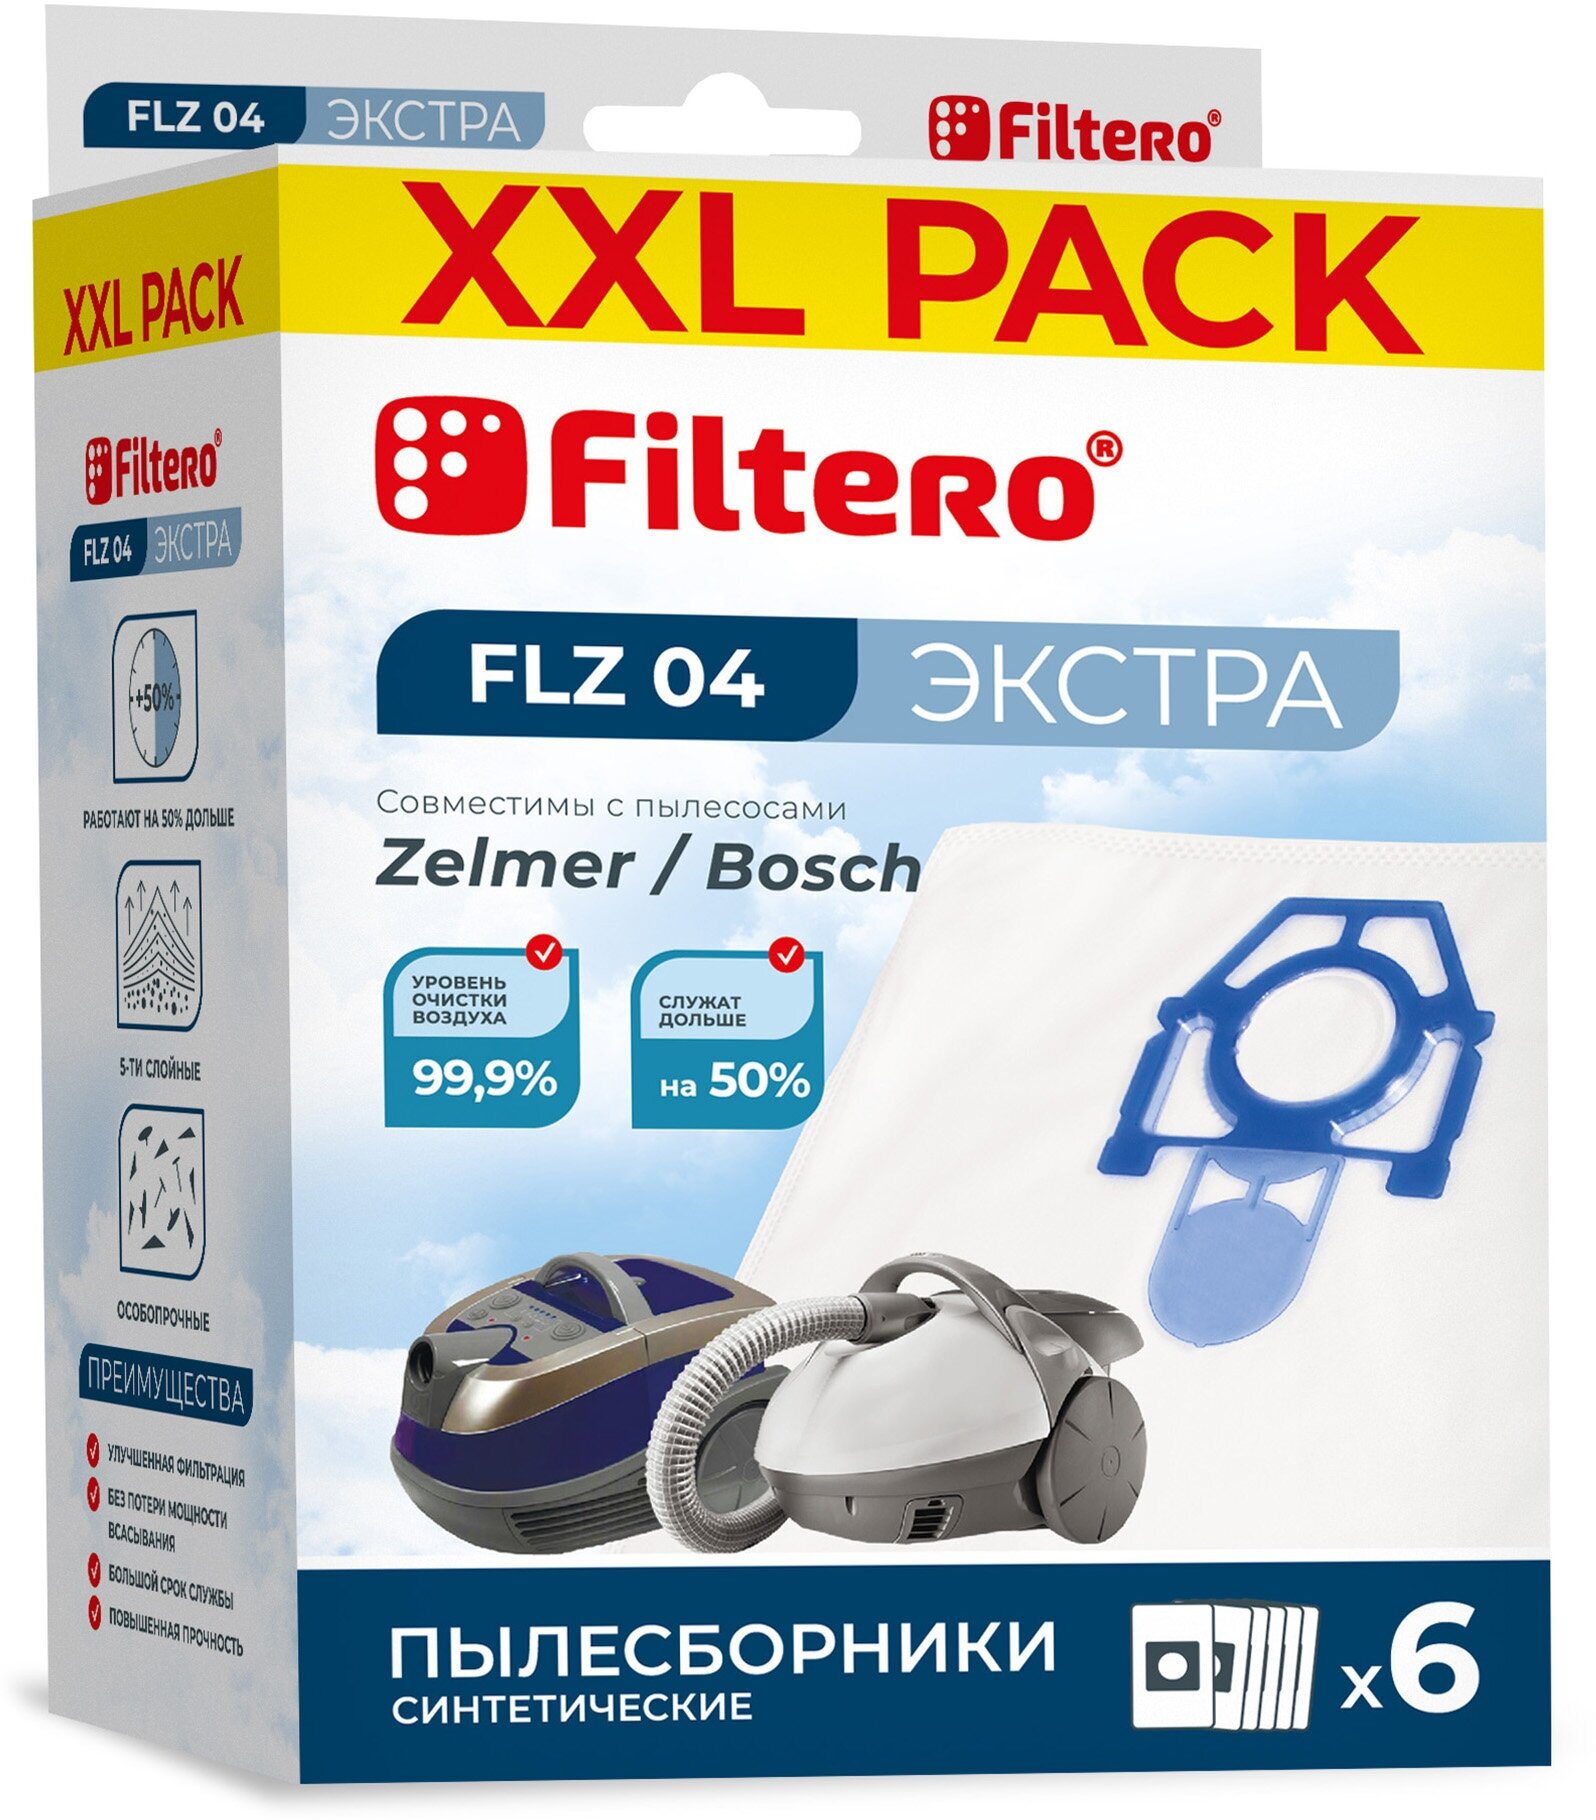 Мешки-пылесборники для пылесоса BORK, Bosch, Zelmer, 6 штук, Filtero FLZ 04 XXL Pack Экстра